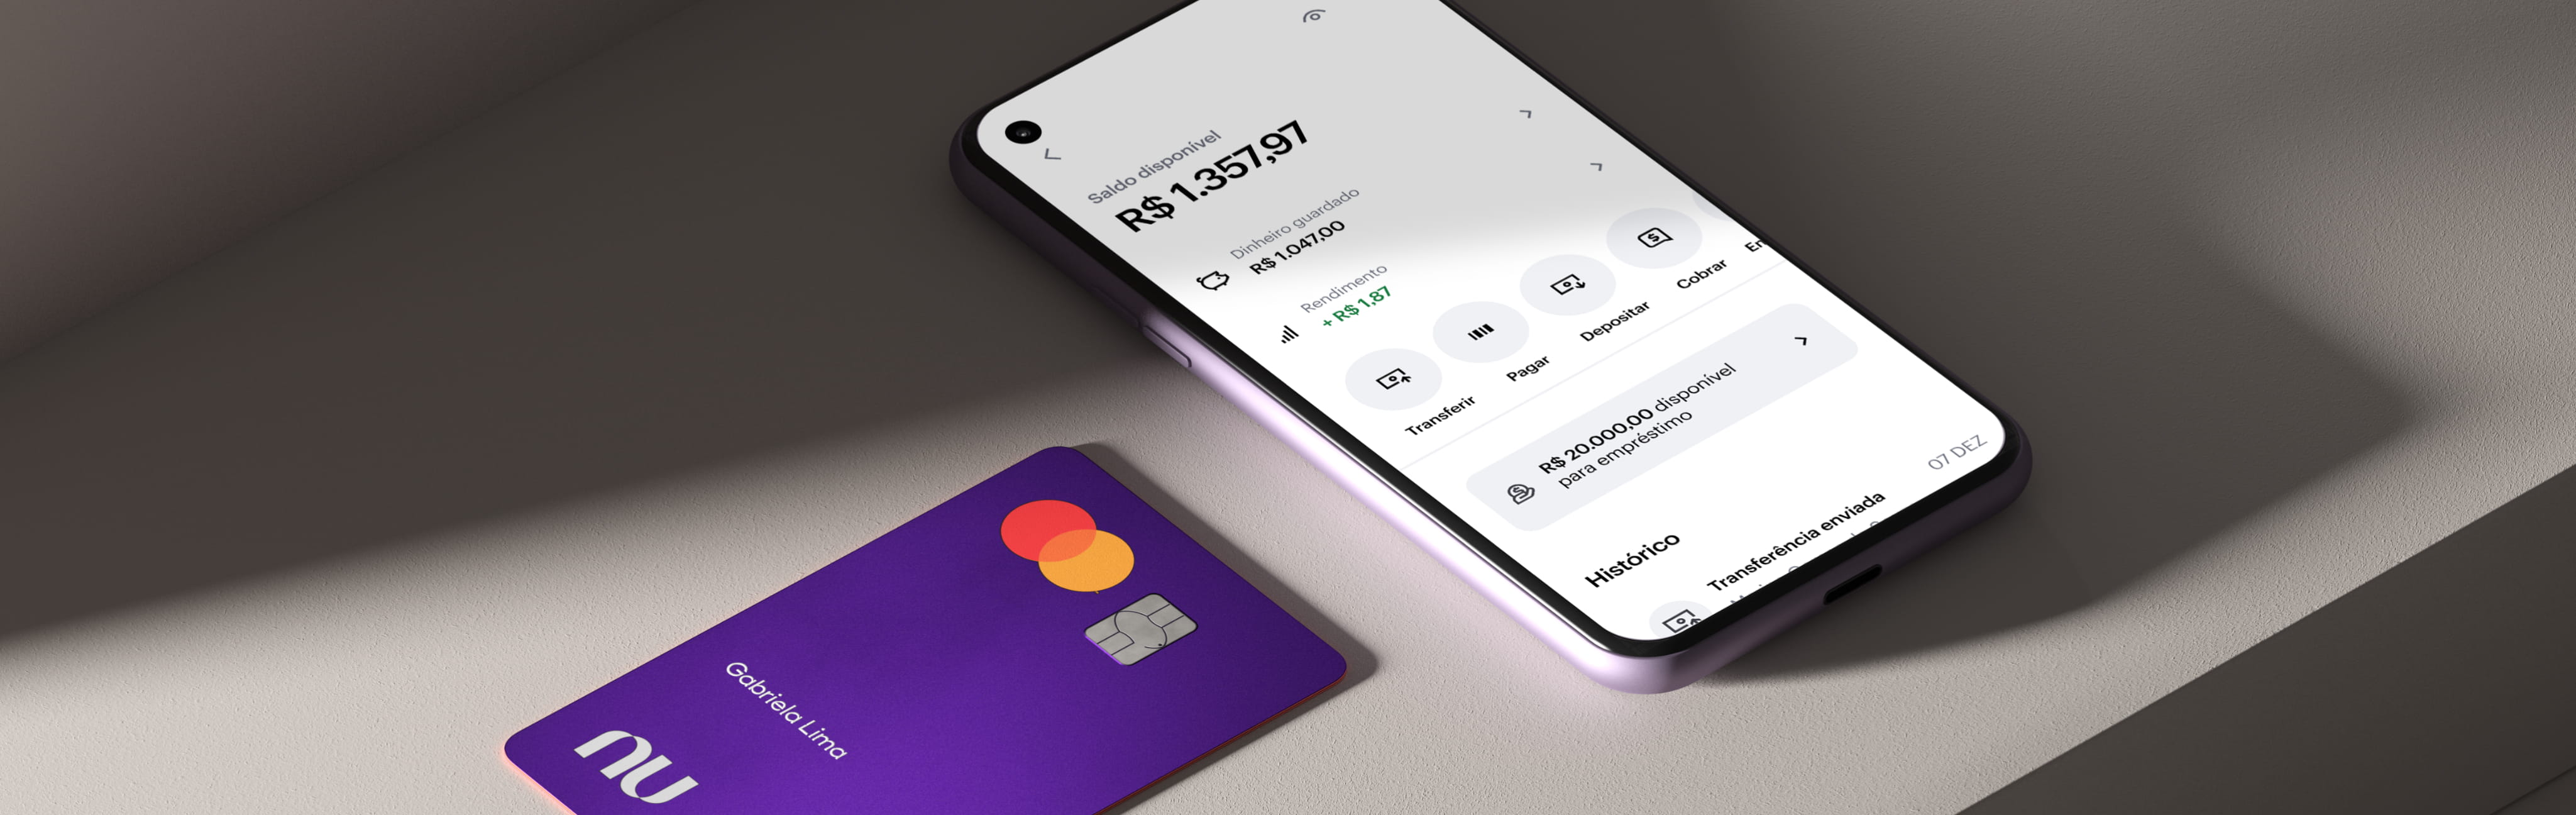 Nubank libera cartão de crédito adicional na conta digital; saiba tudo